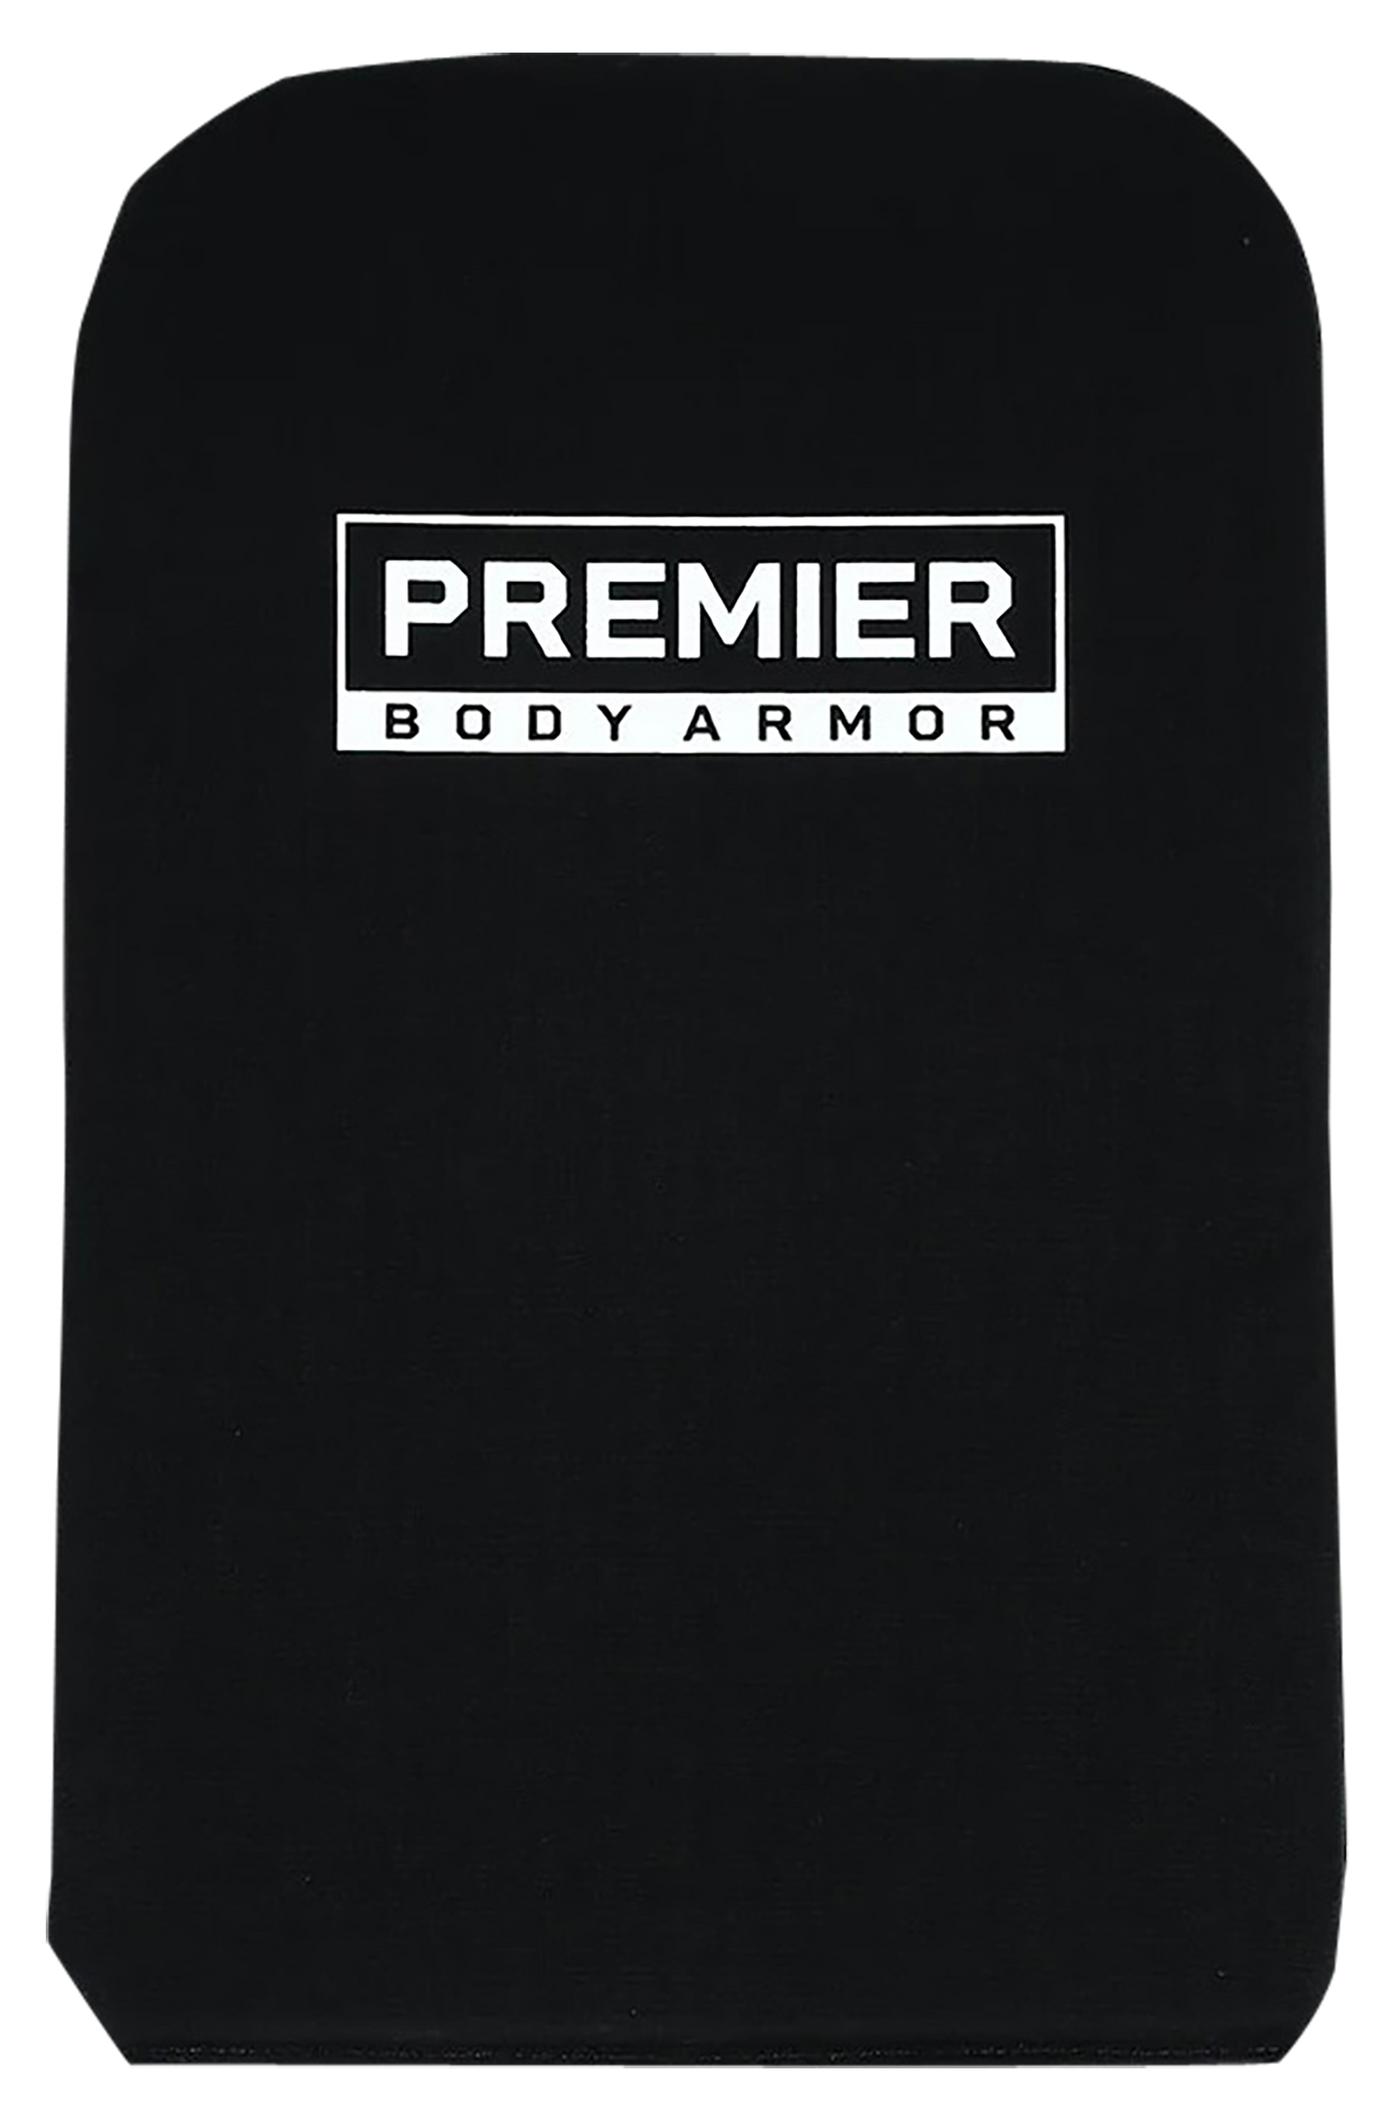 Premier Body Armor Llc Backpack Panel, Prem Bpp9156 Panel Blk Vertx/overlander